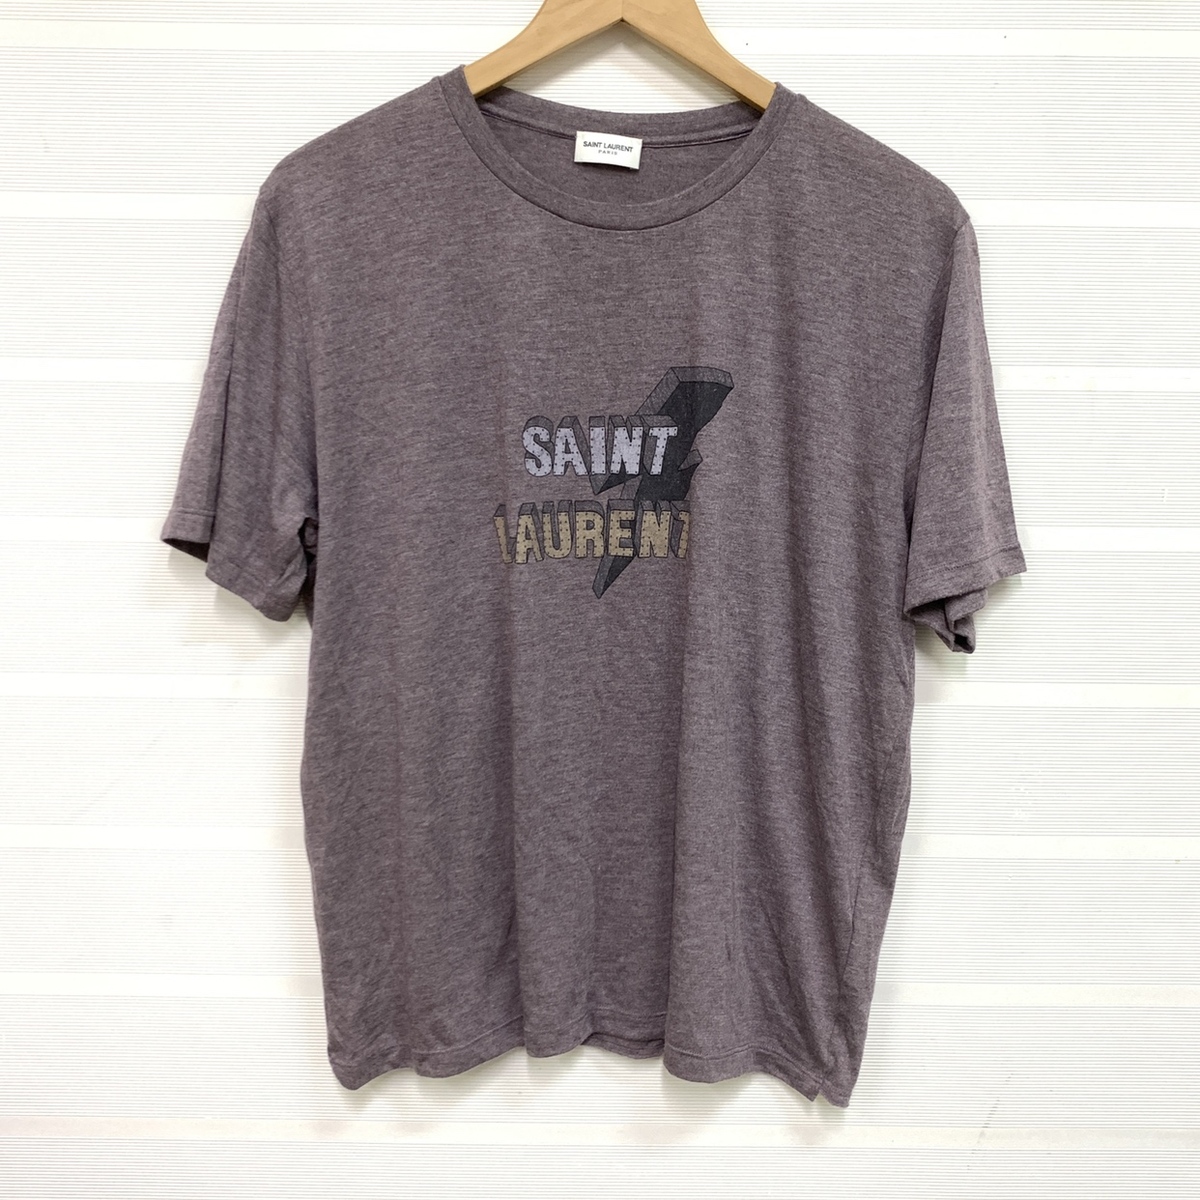 サンローランパリの正規 17年 500898 パープル系 ロゴデザインTシャツの買取実績です。